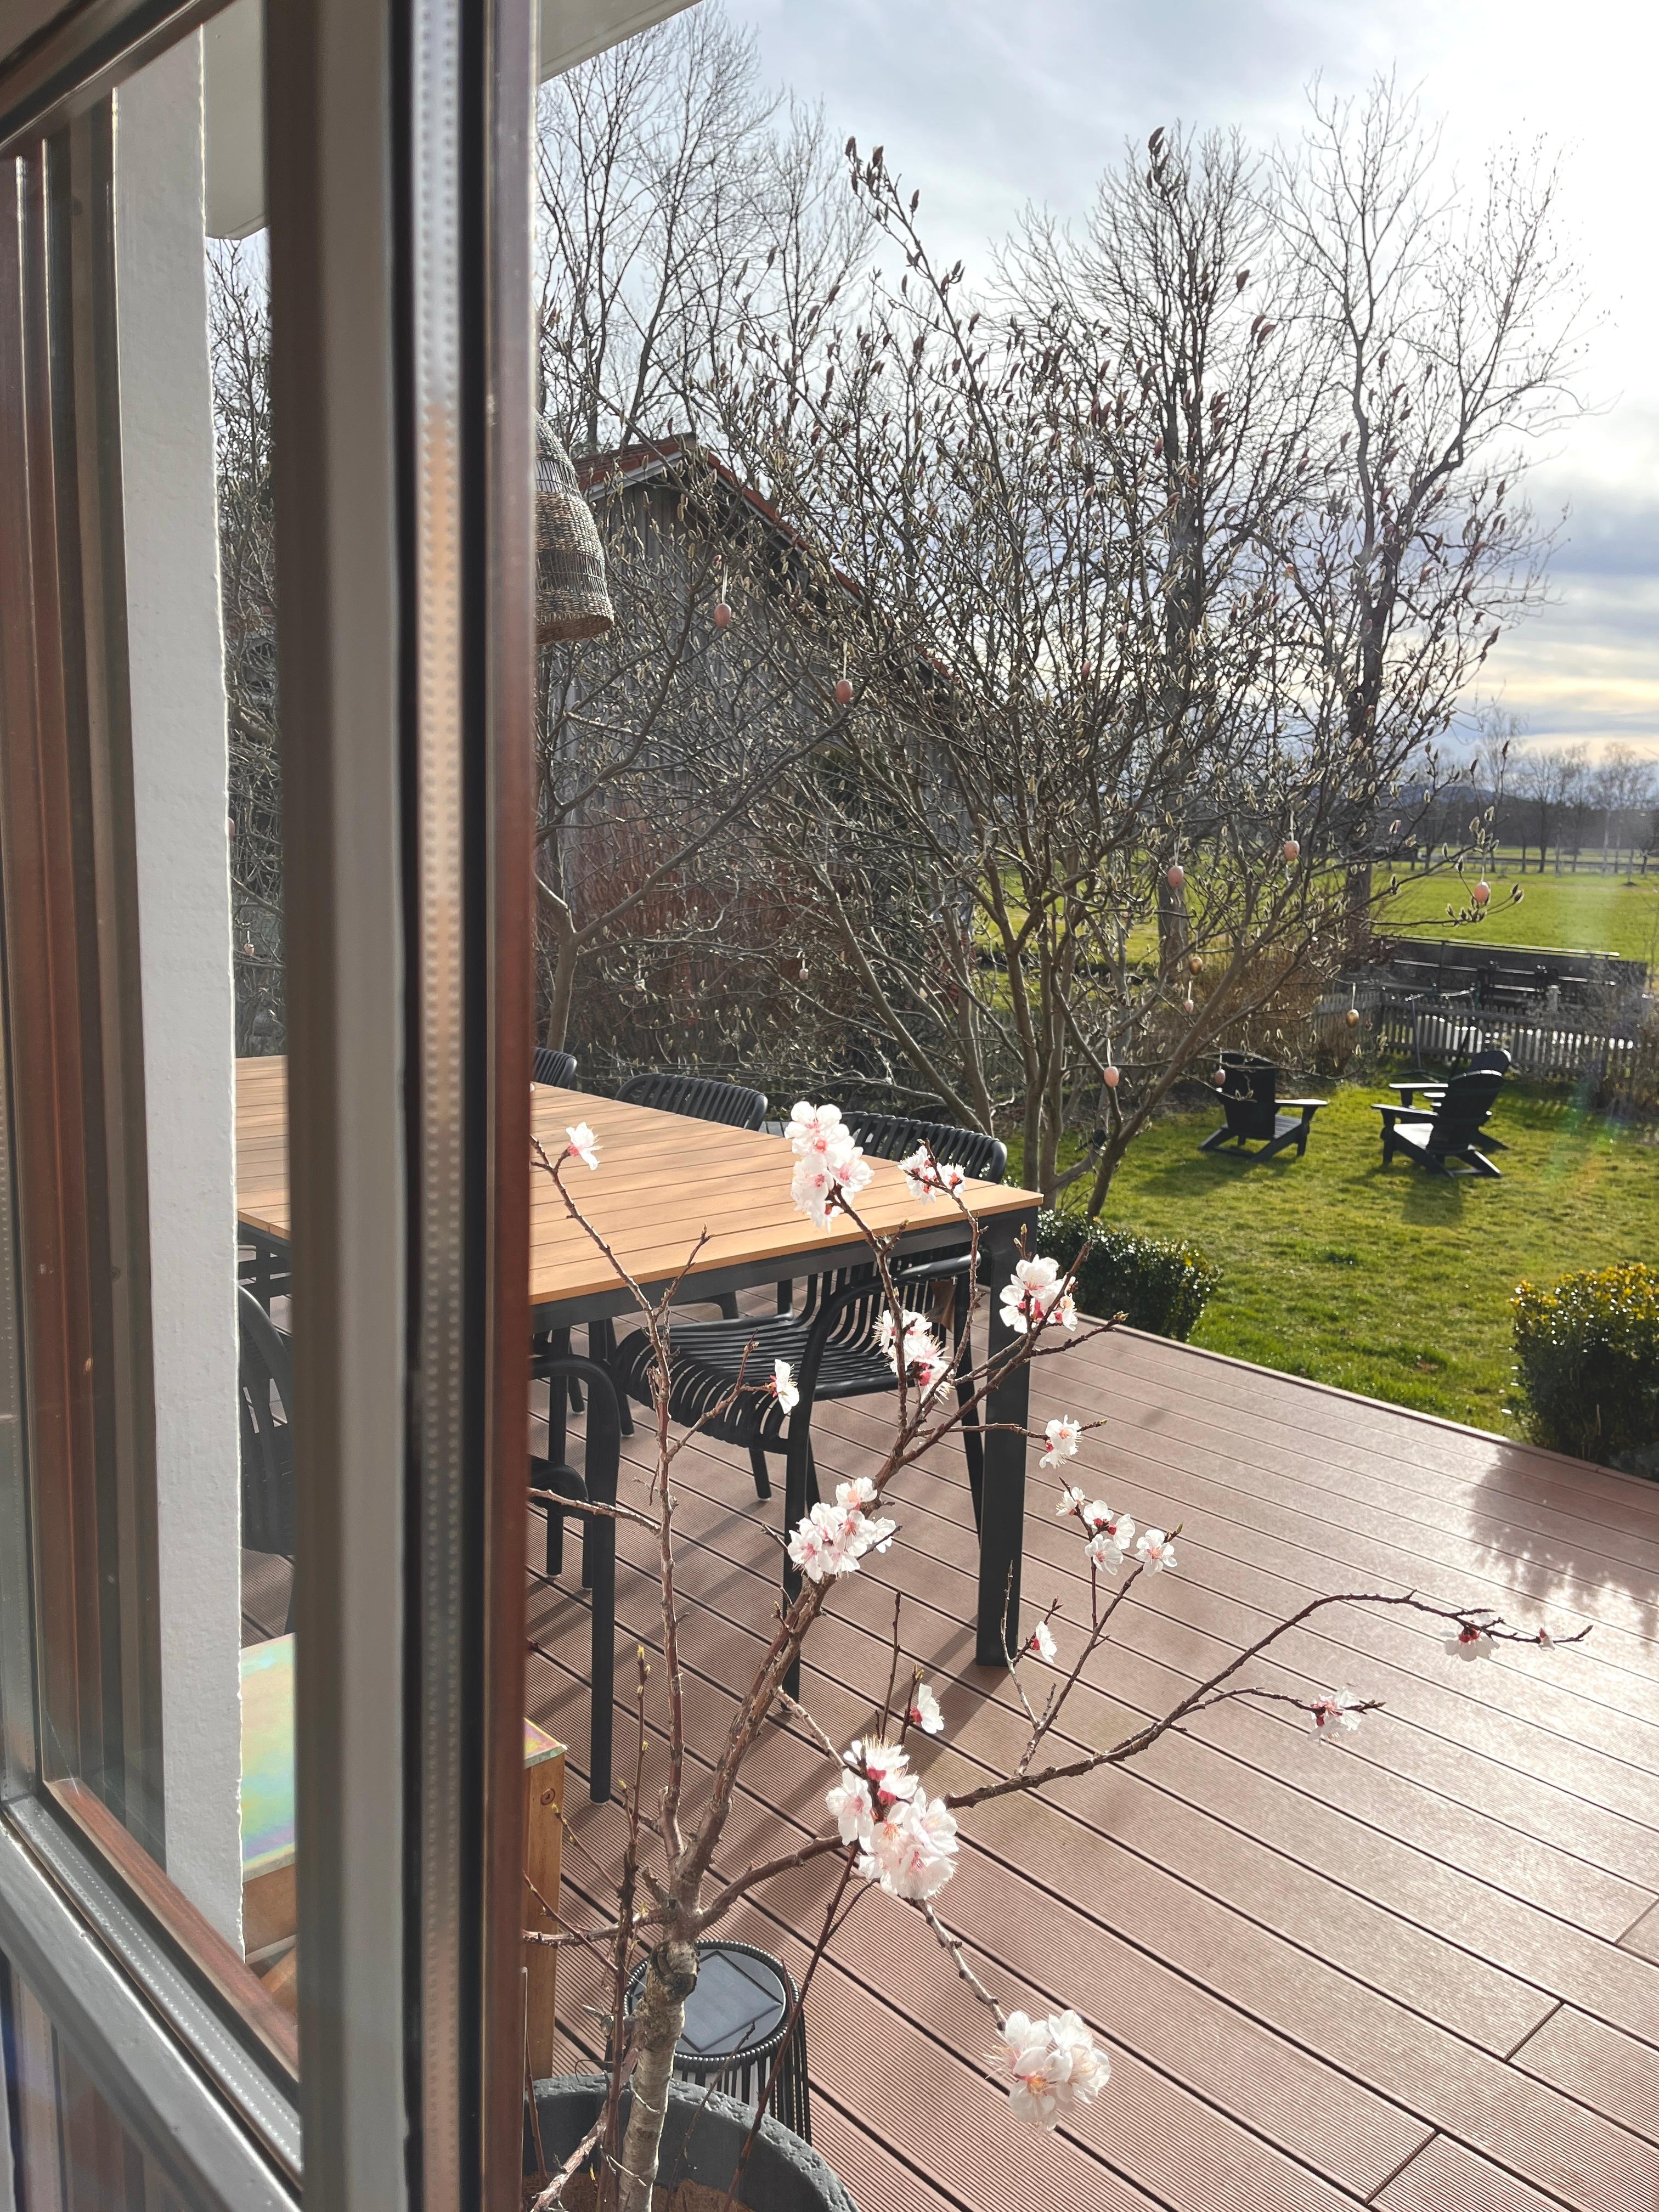 Zurück aus dem Winterschlaf 🌸
#terrasse#garten#adirondacks#magnolie#derfrühlingkommt#pfirsichblüte#landleben#outdoorliving#hausambach